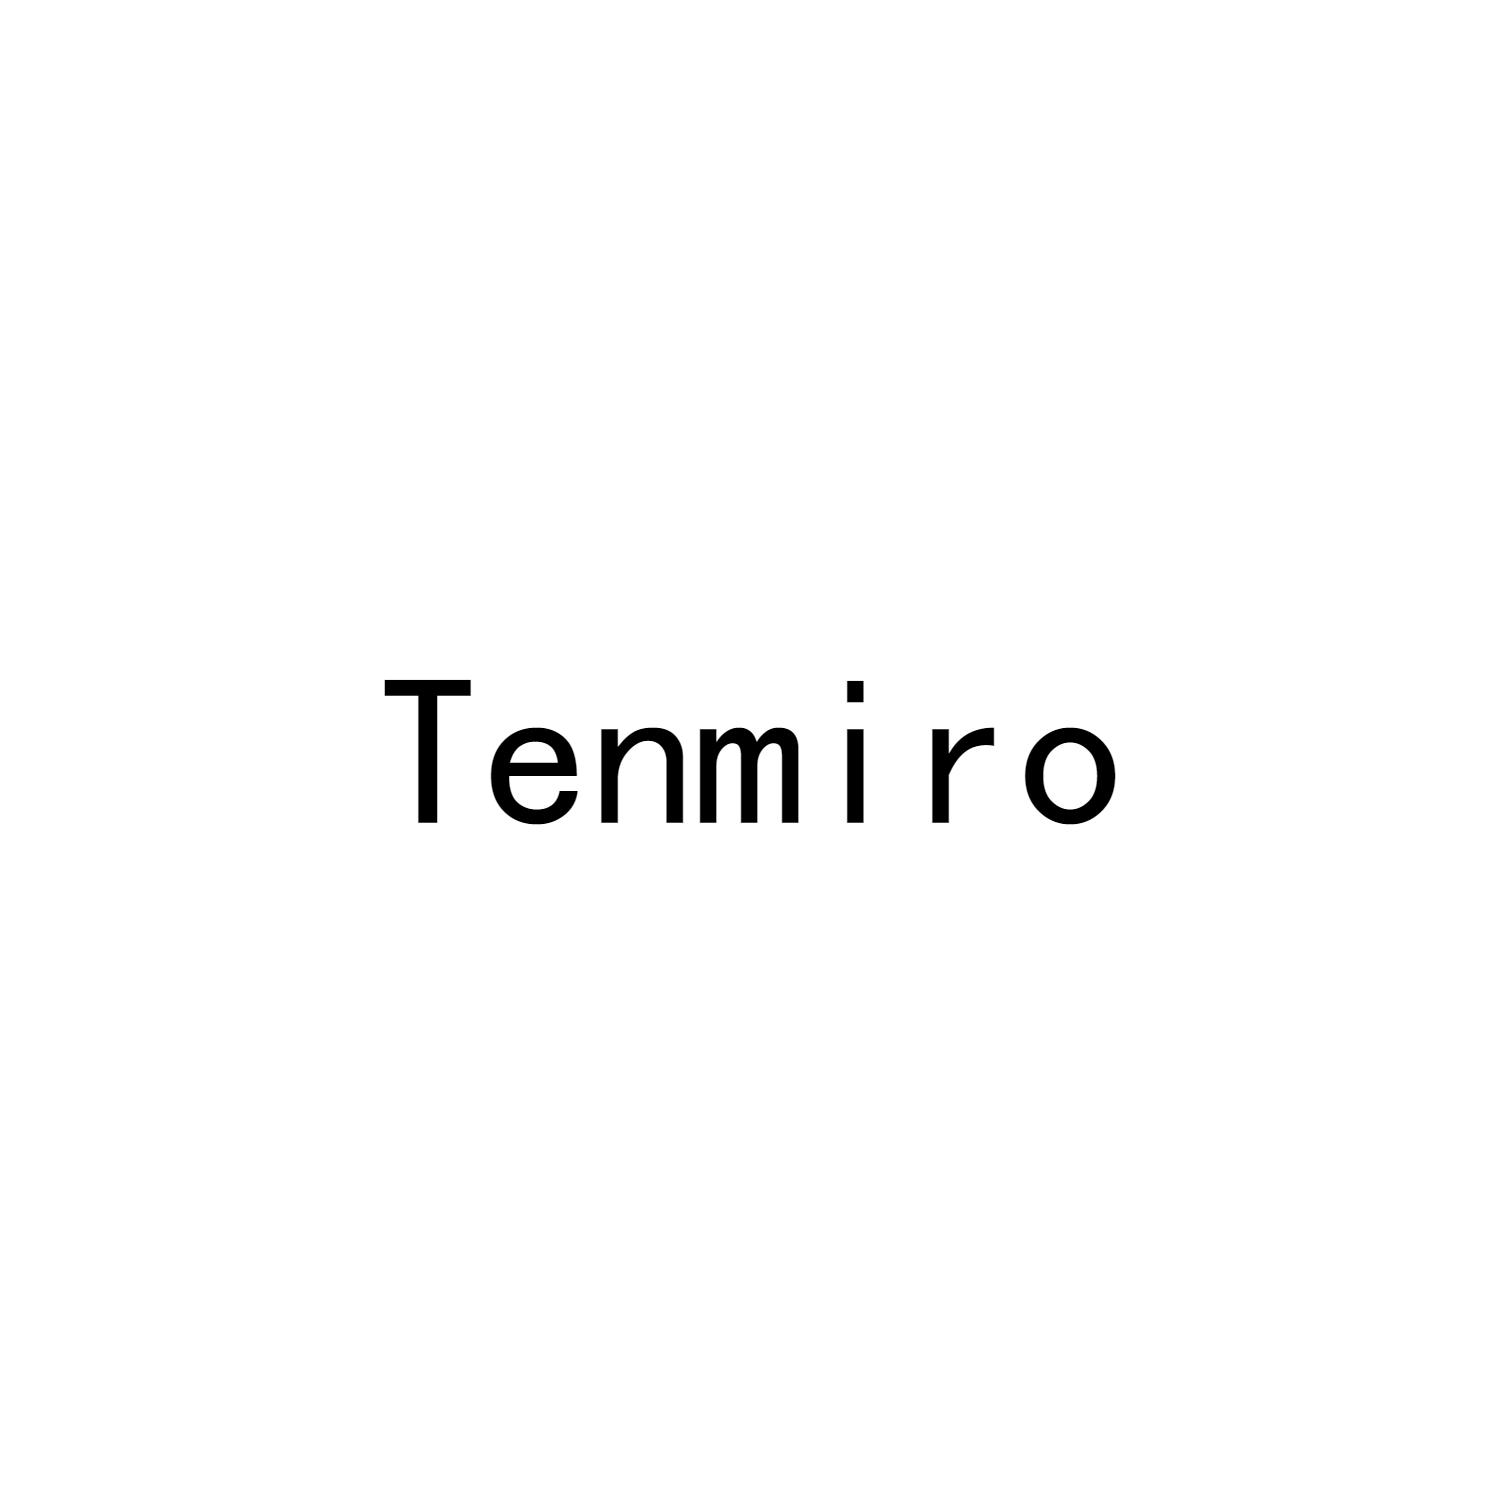 TENMIRO